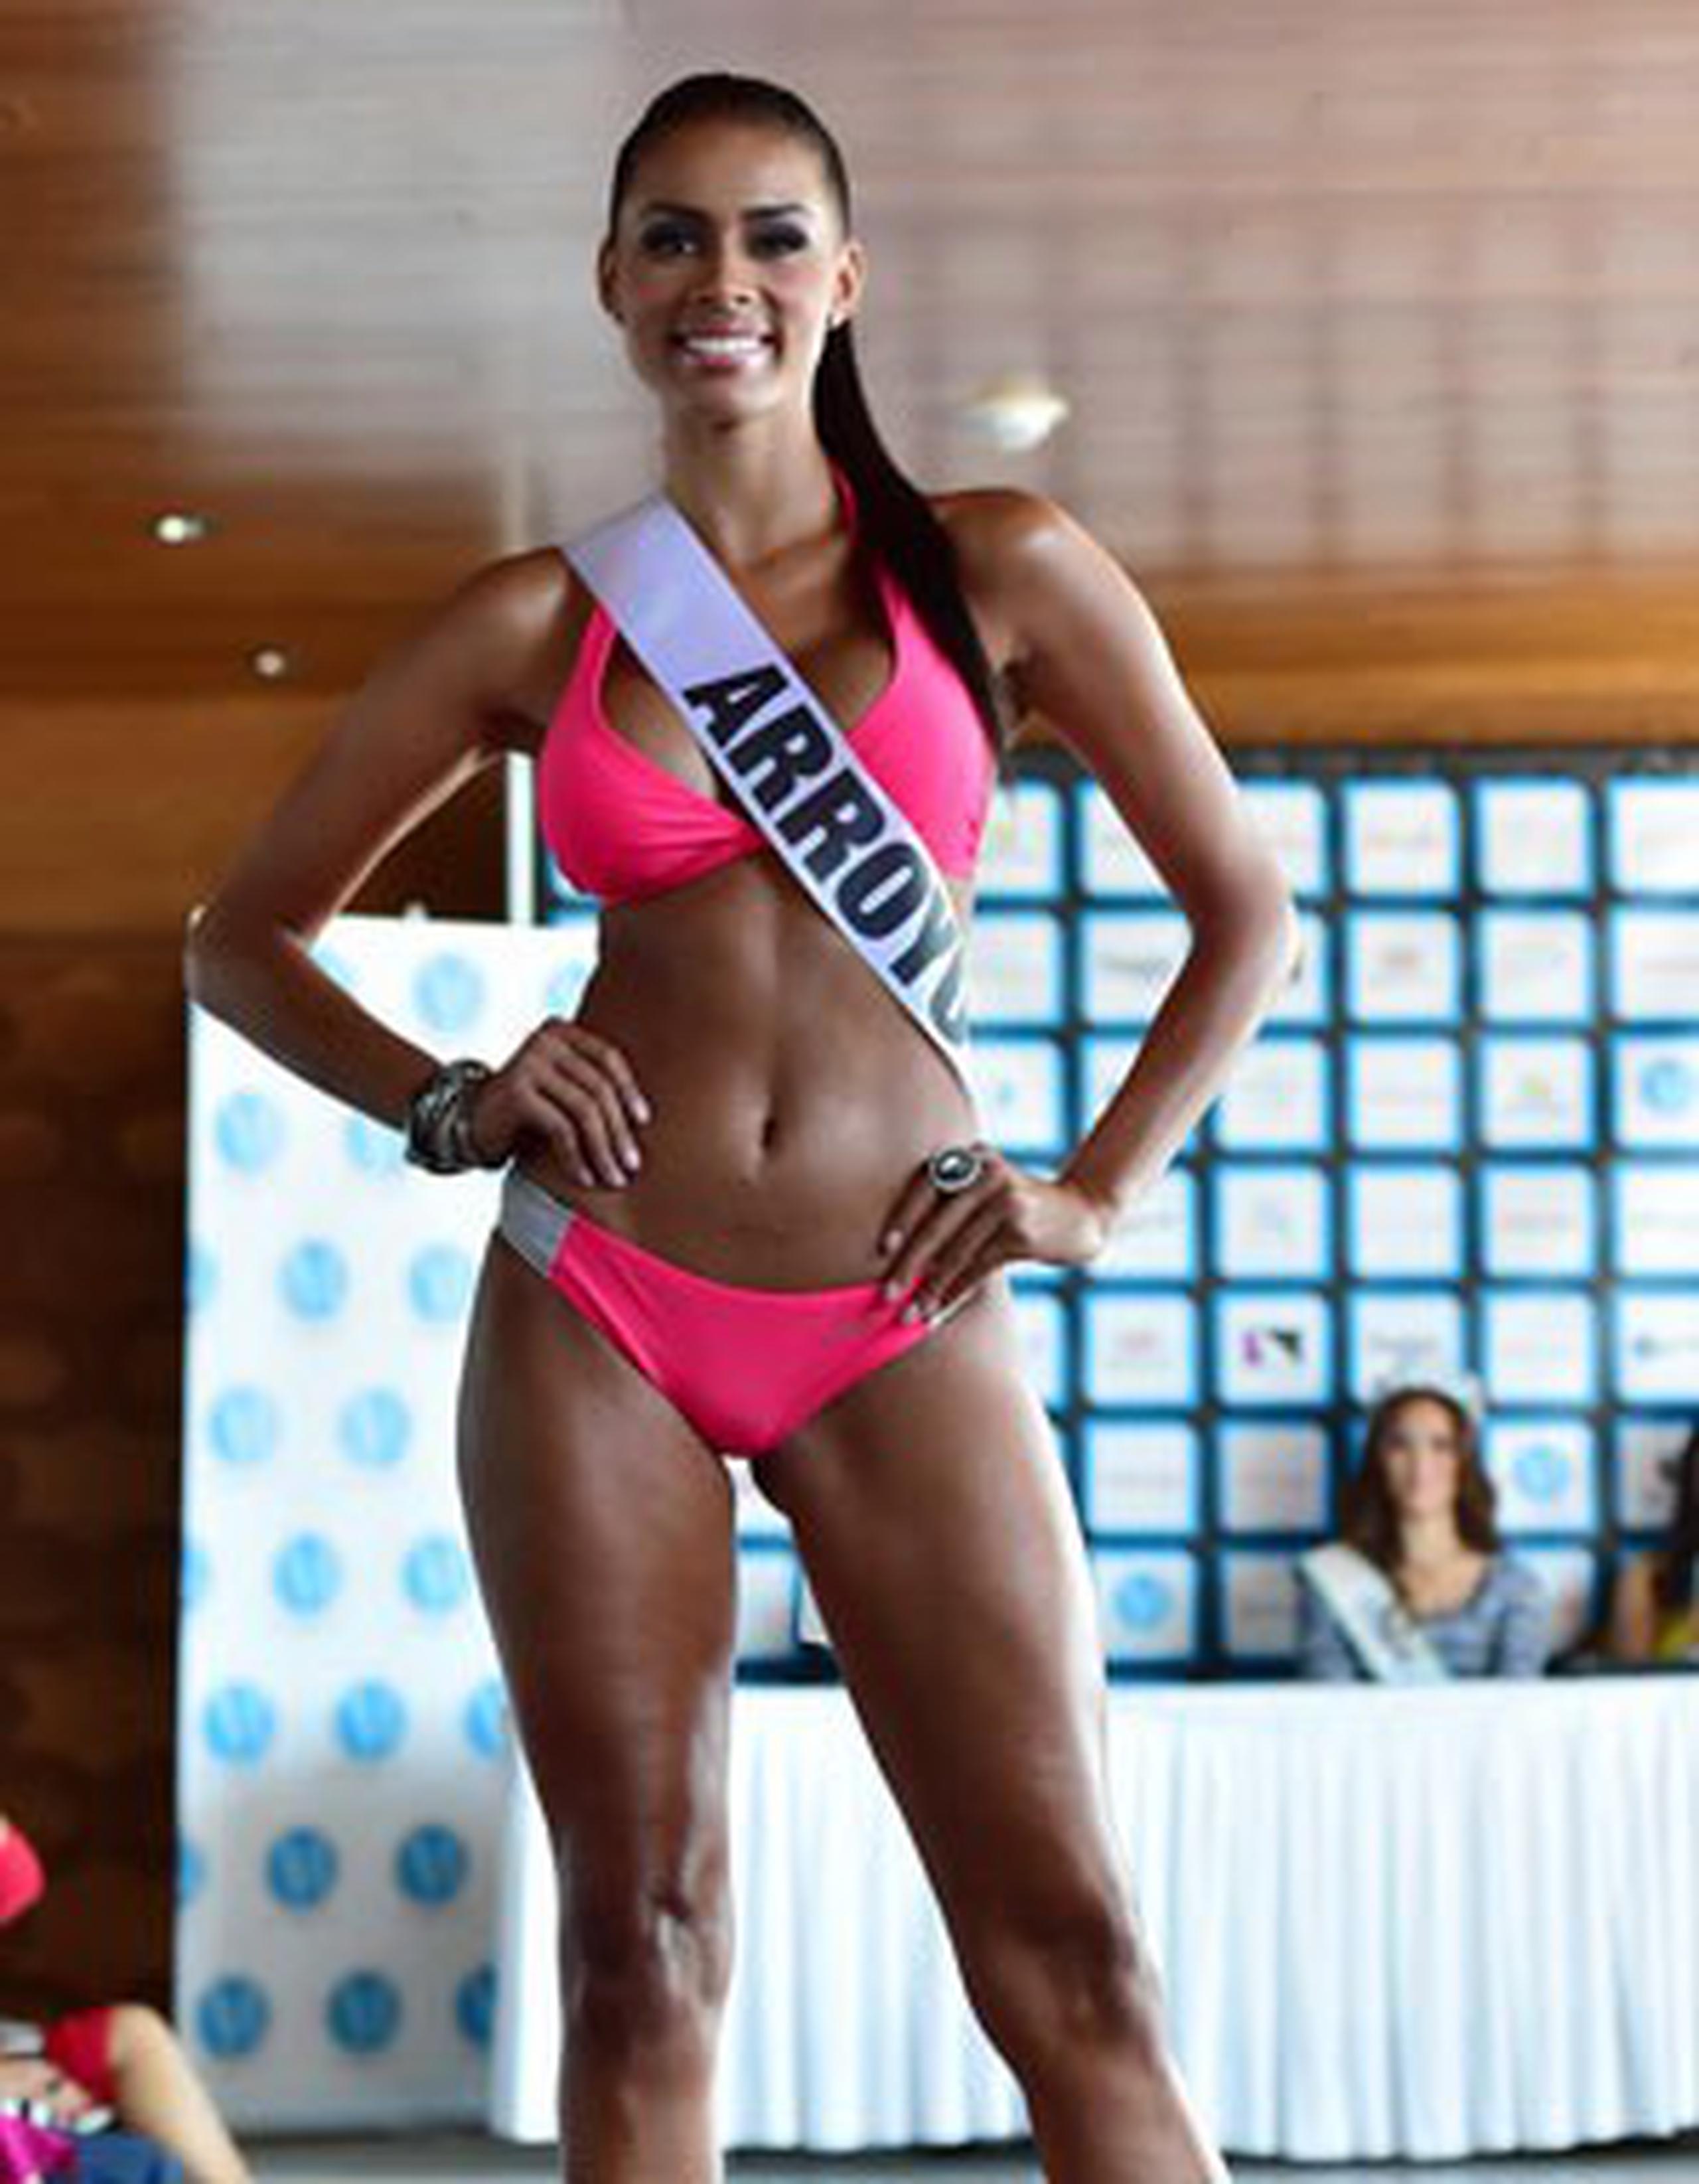 Vuelve a representar a su natal pueblo de Arroyo, pero esta vez en Miss Mundo de Puerto Rico. (Archivo)